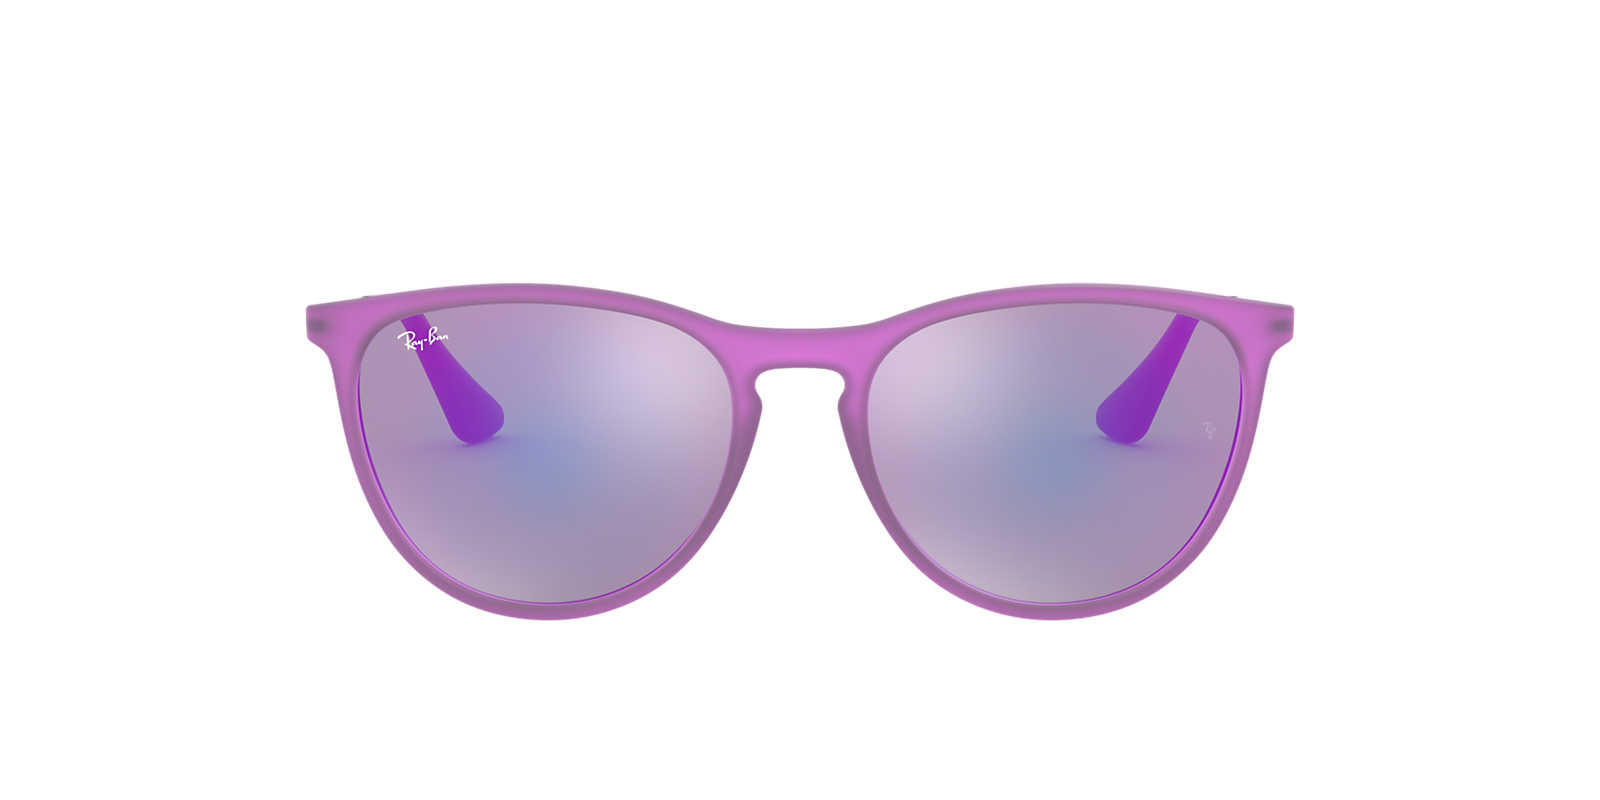 2019 cheap womens ray ban sunglasses free shiping